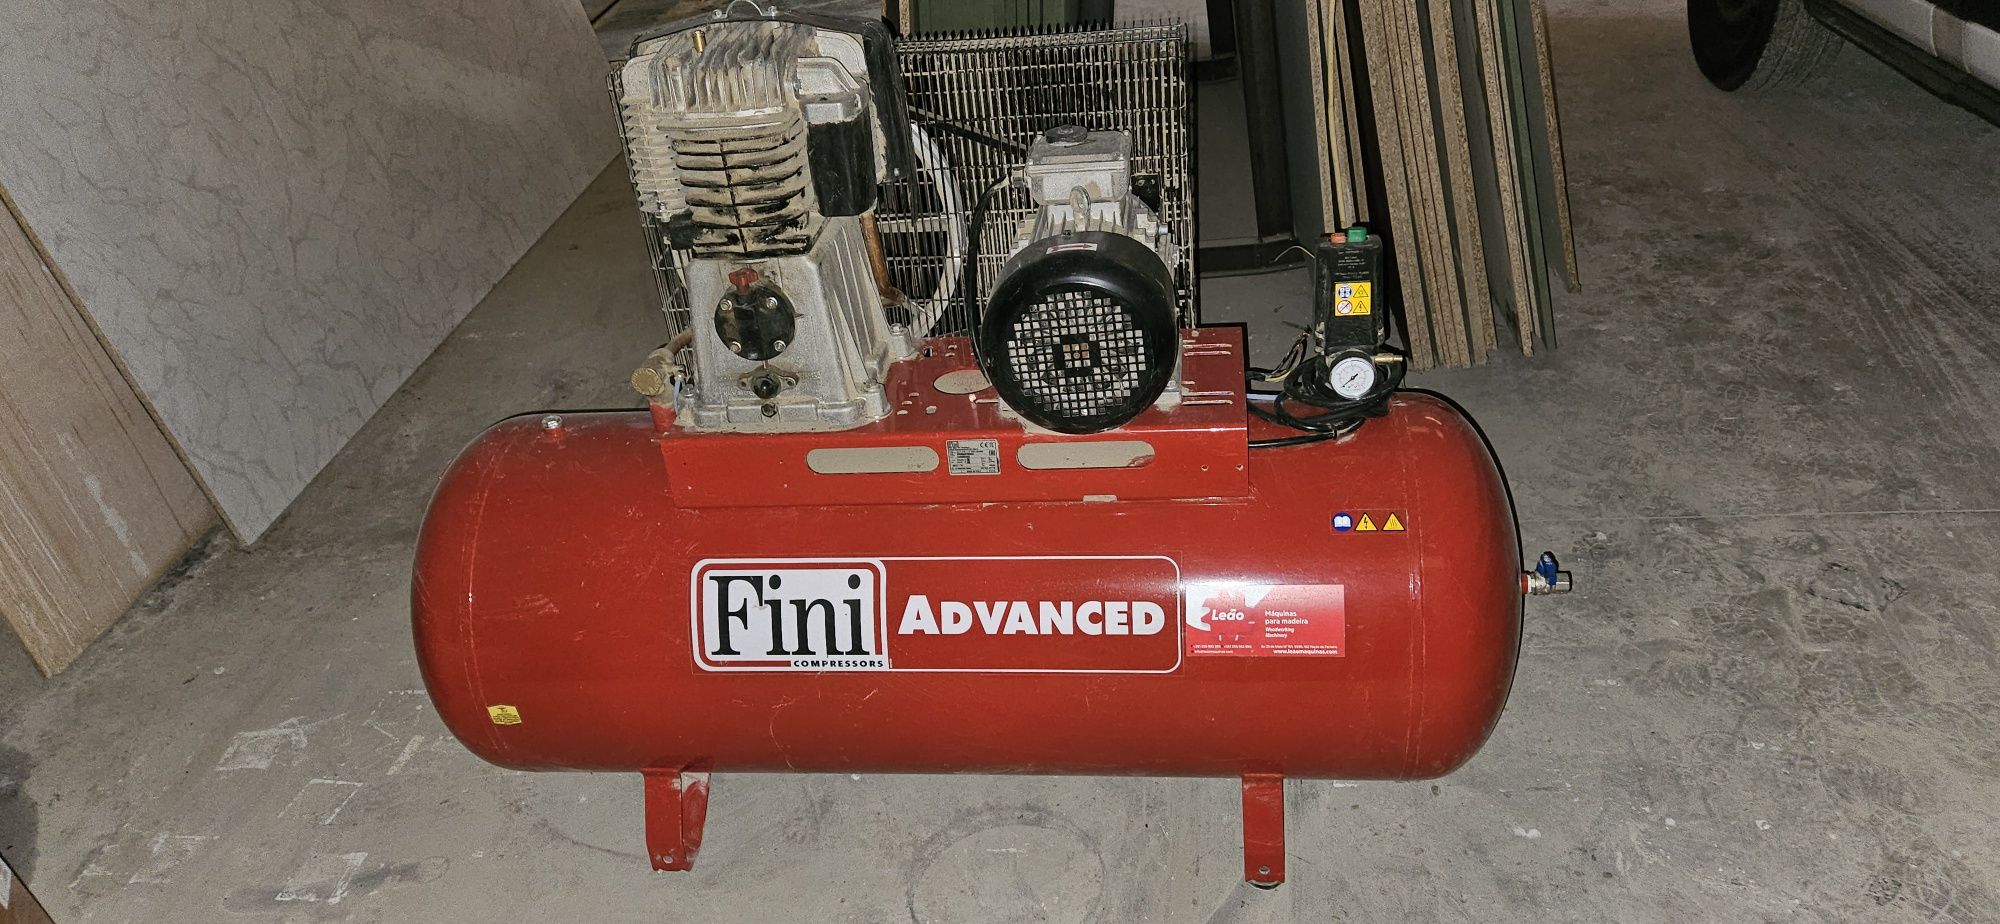 Compressor FINI ADVANCED 270L